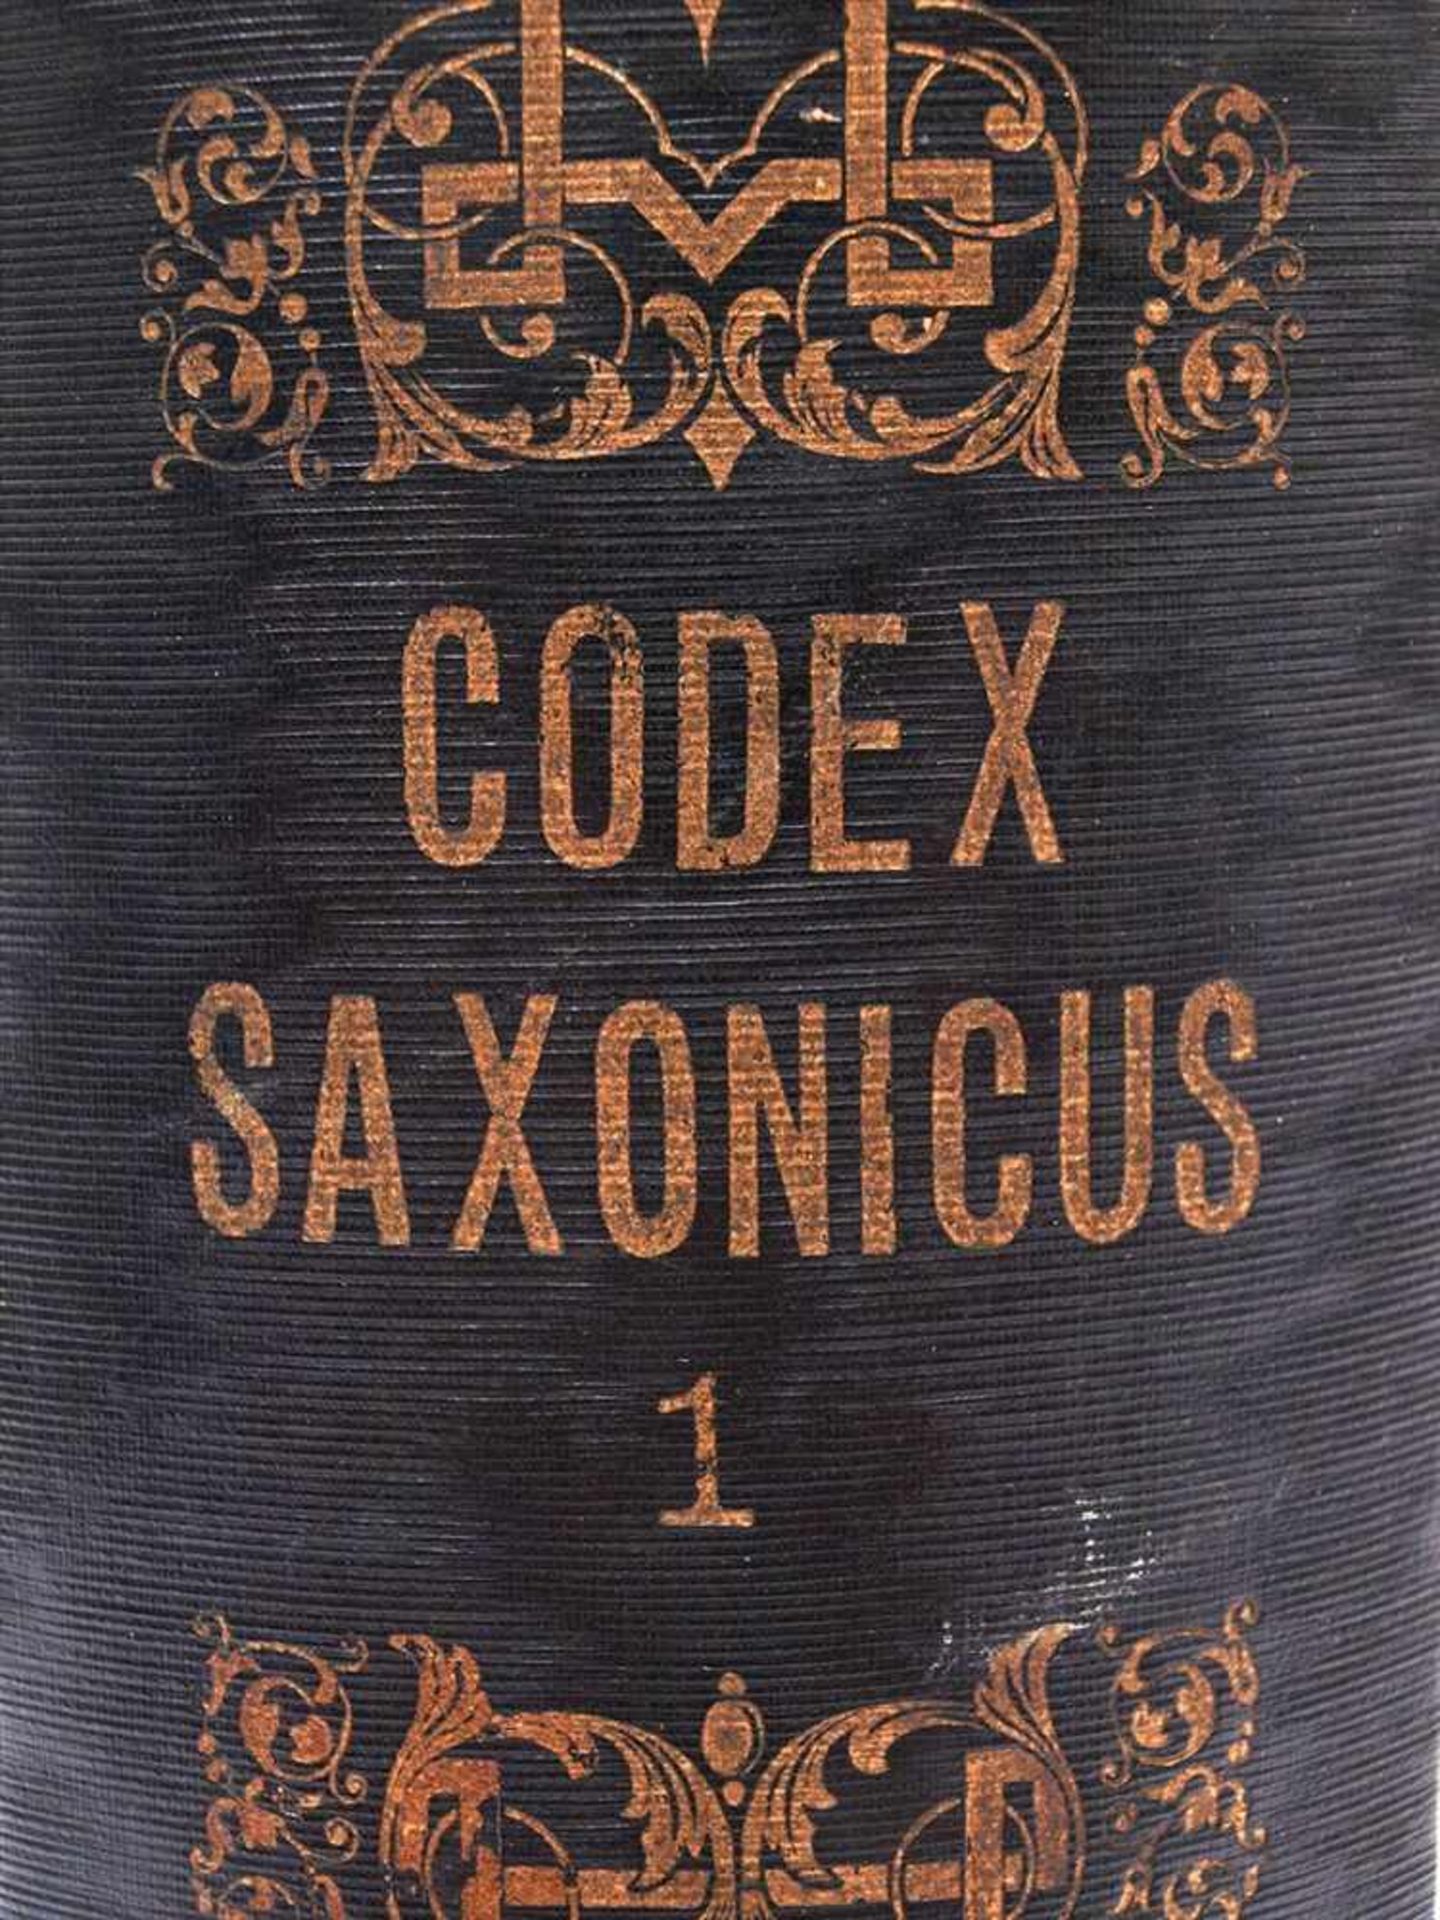 Codex Saxonicus2 Bde., Reclam, Leipzig 1842. Sammlung der sächsischen Gesetze aus der Zeit von - Image 2 of 2